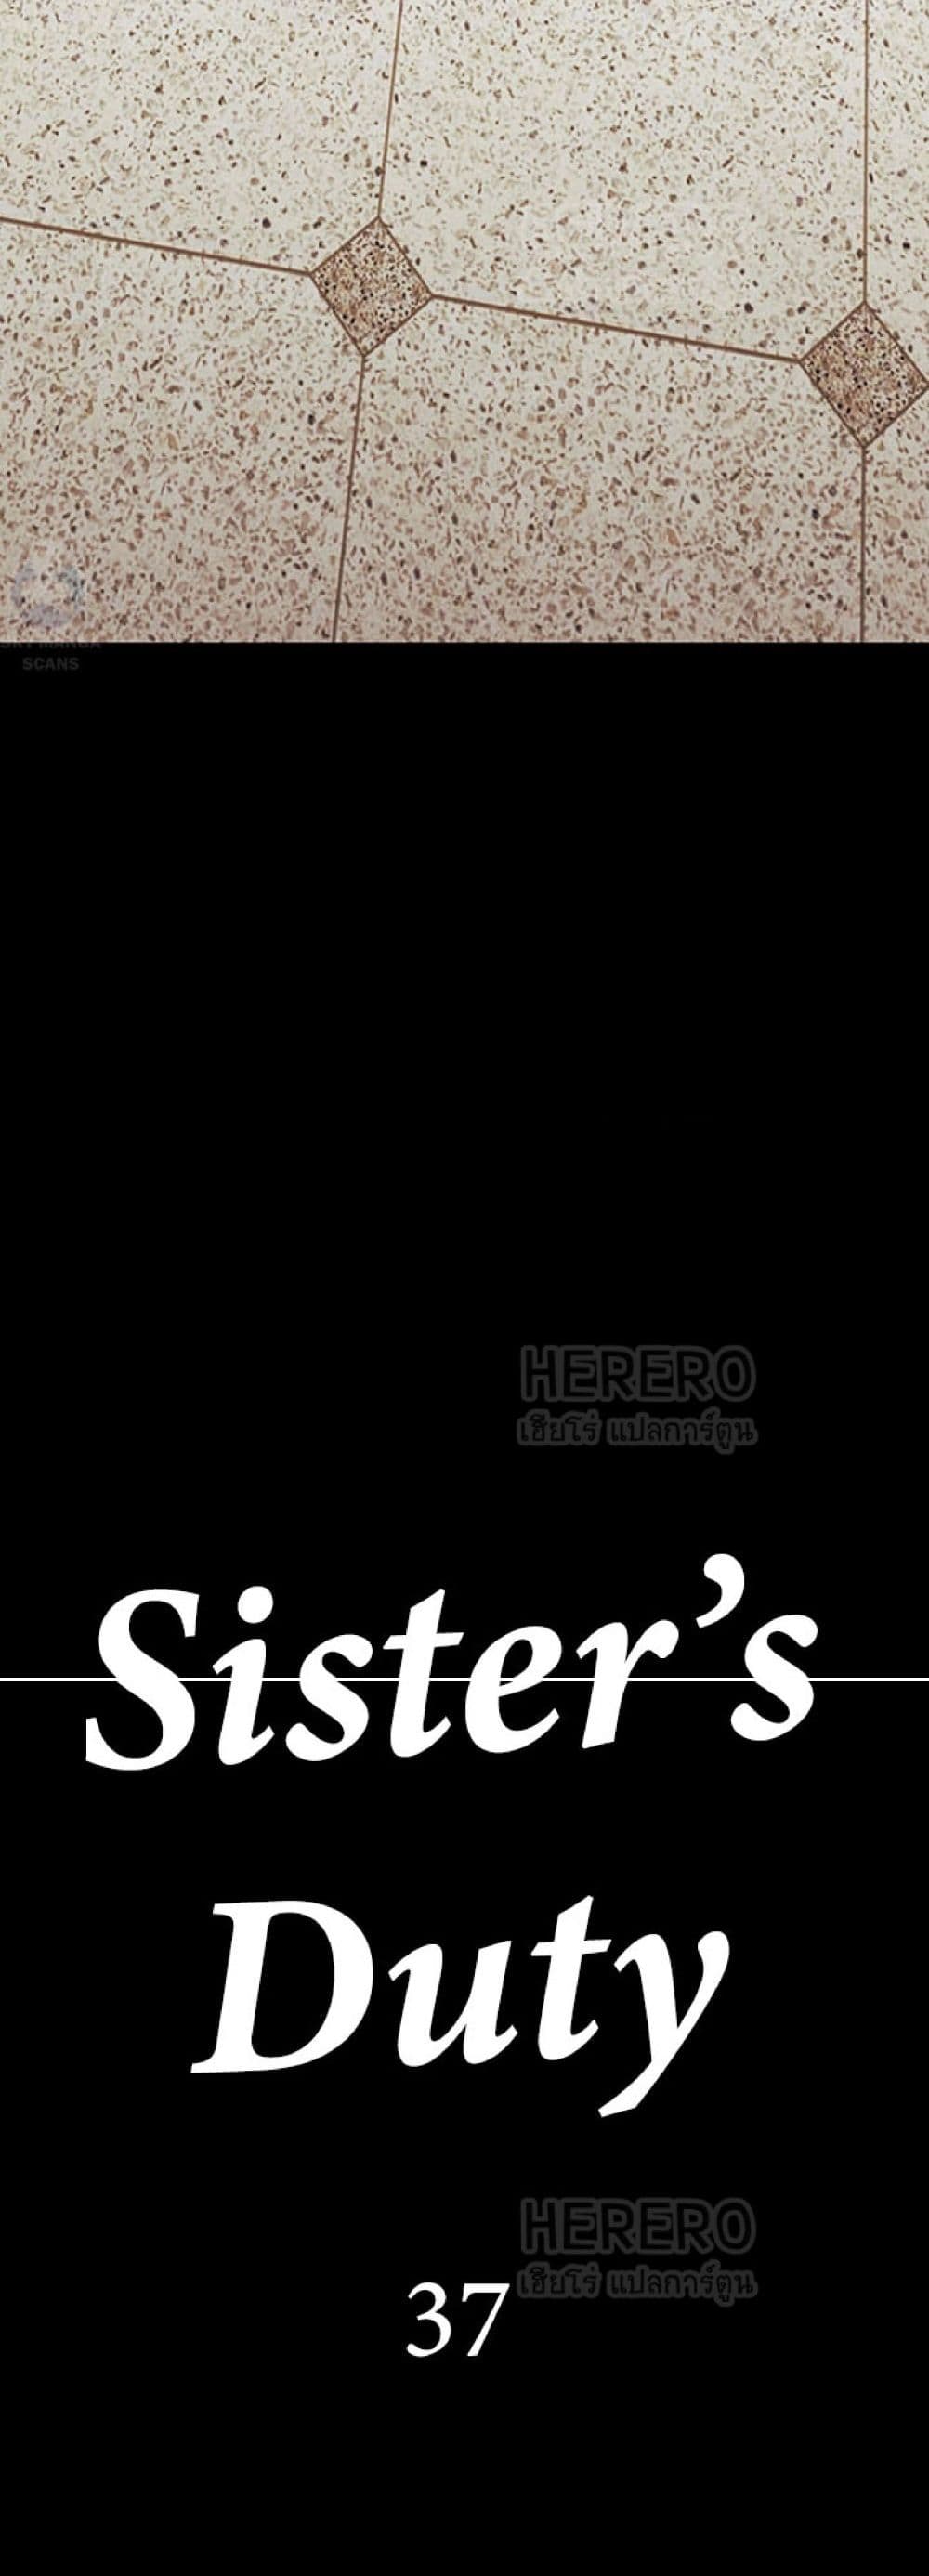 Sister's Duty 37-37